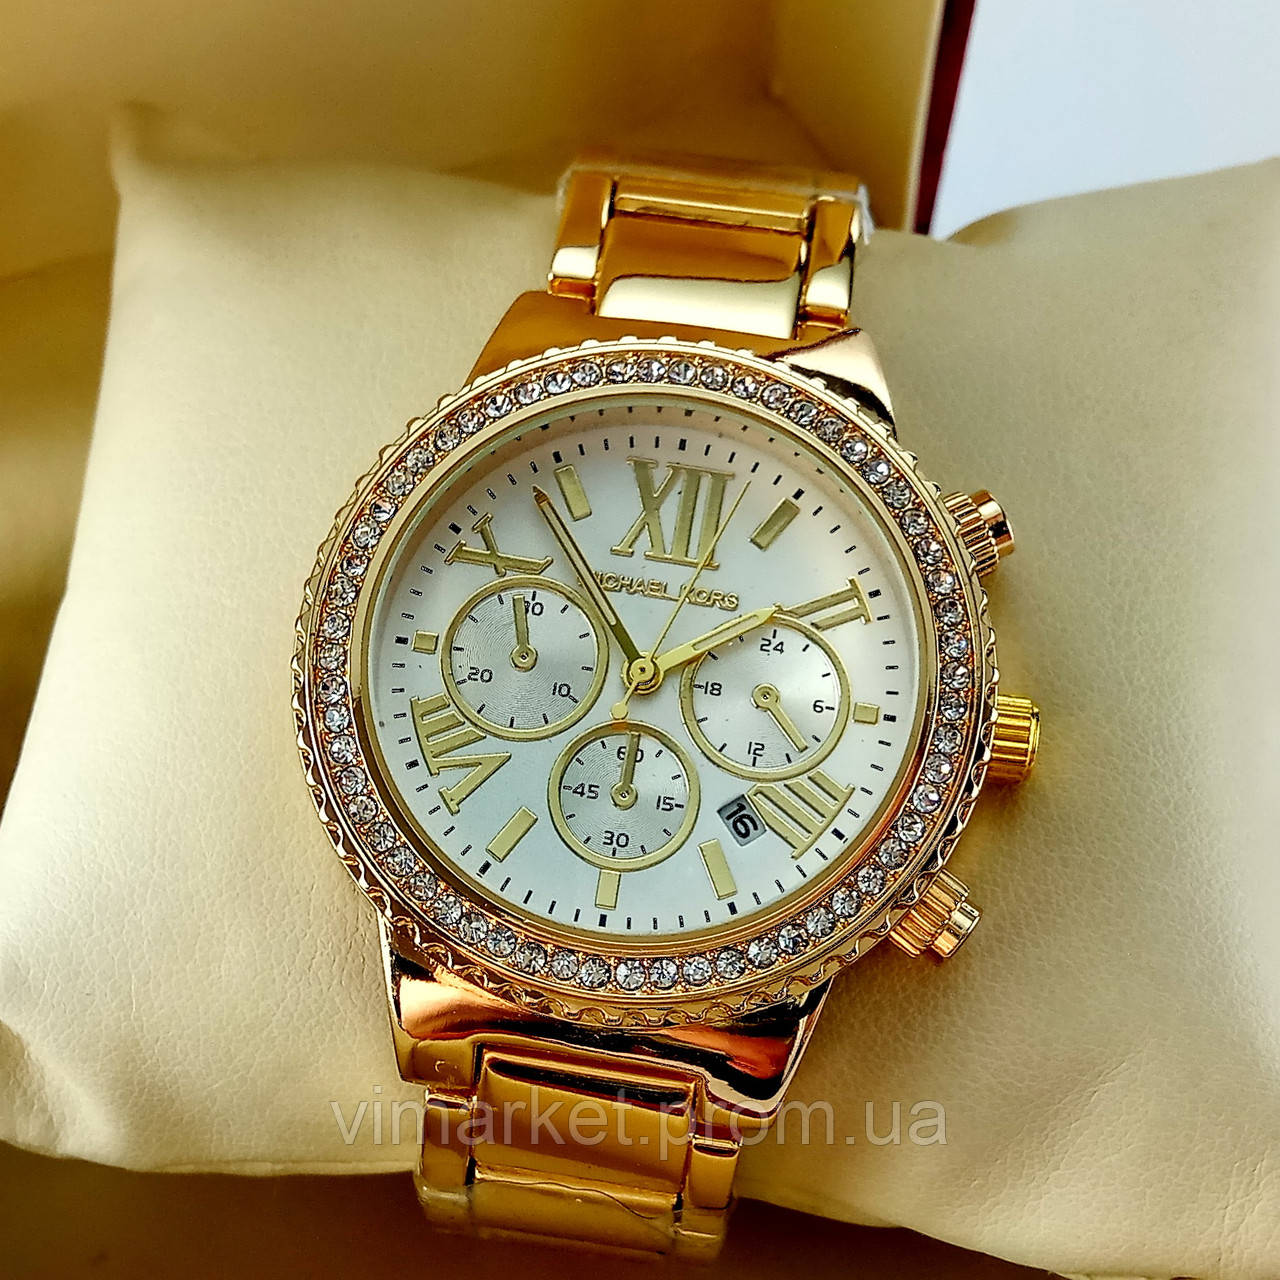 Жіночі годинники Michael Kors MK-C30 на металевому браслеті, золотого кольору, з сріблястим циферблатом, з датою